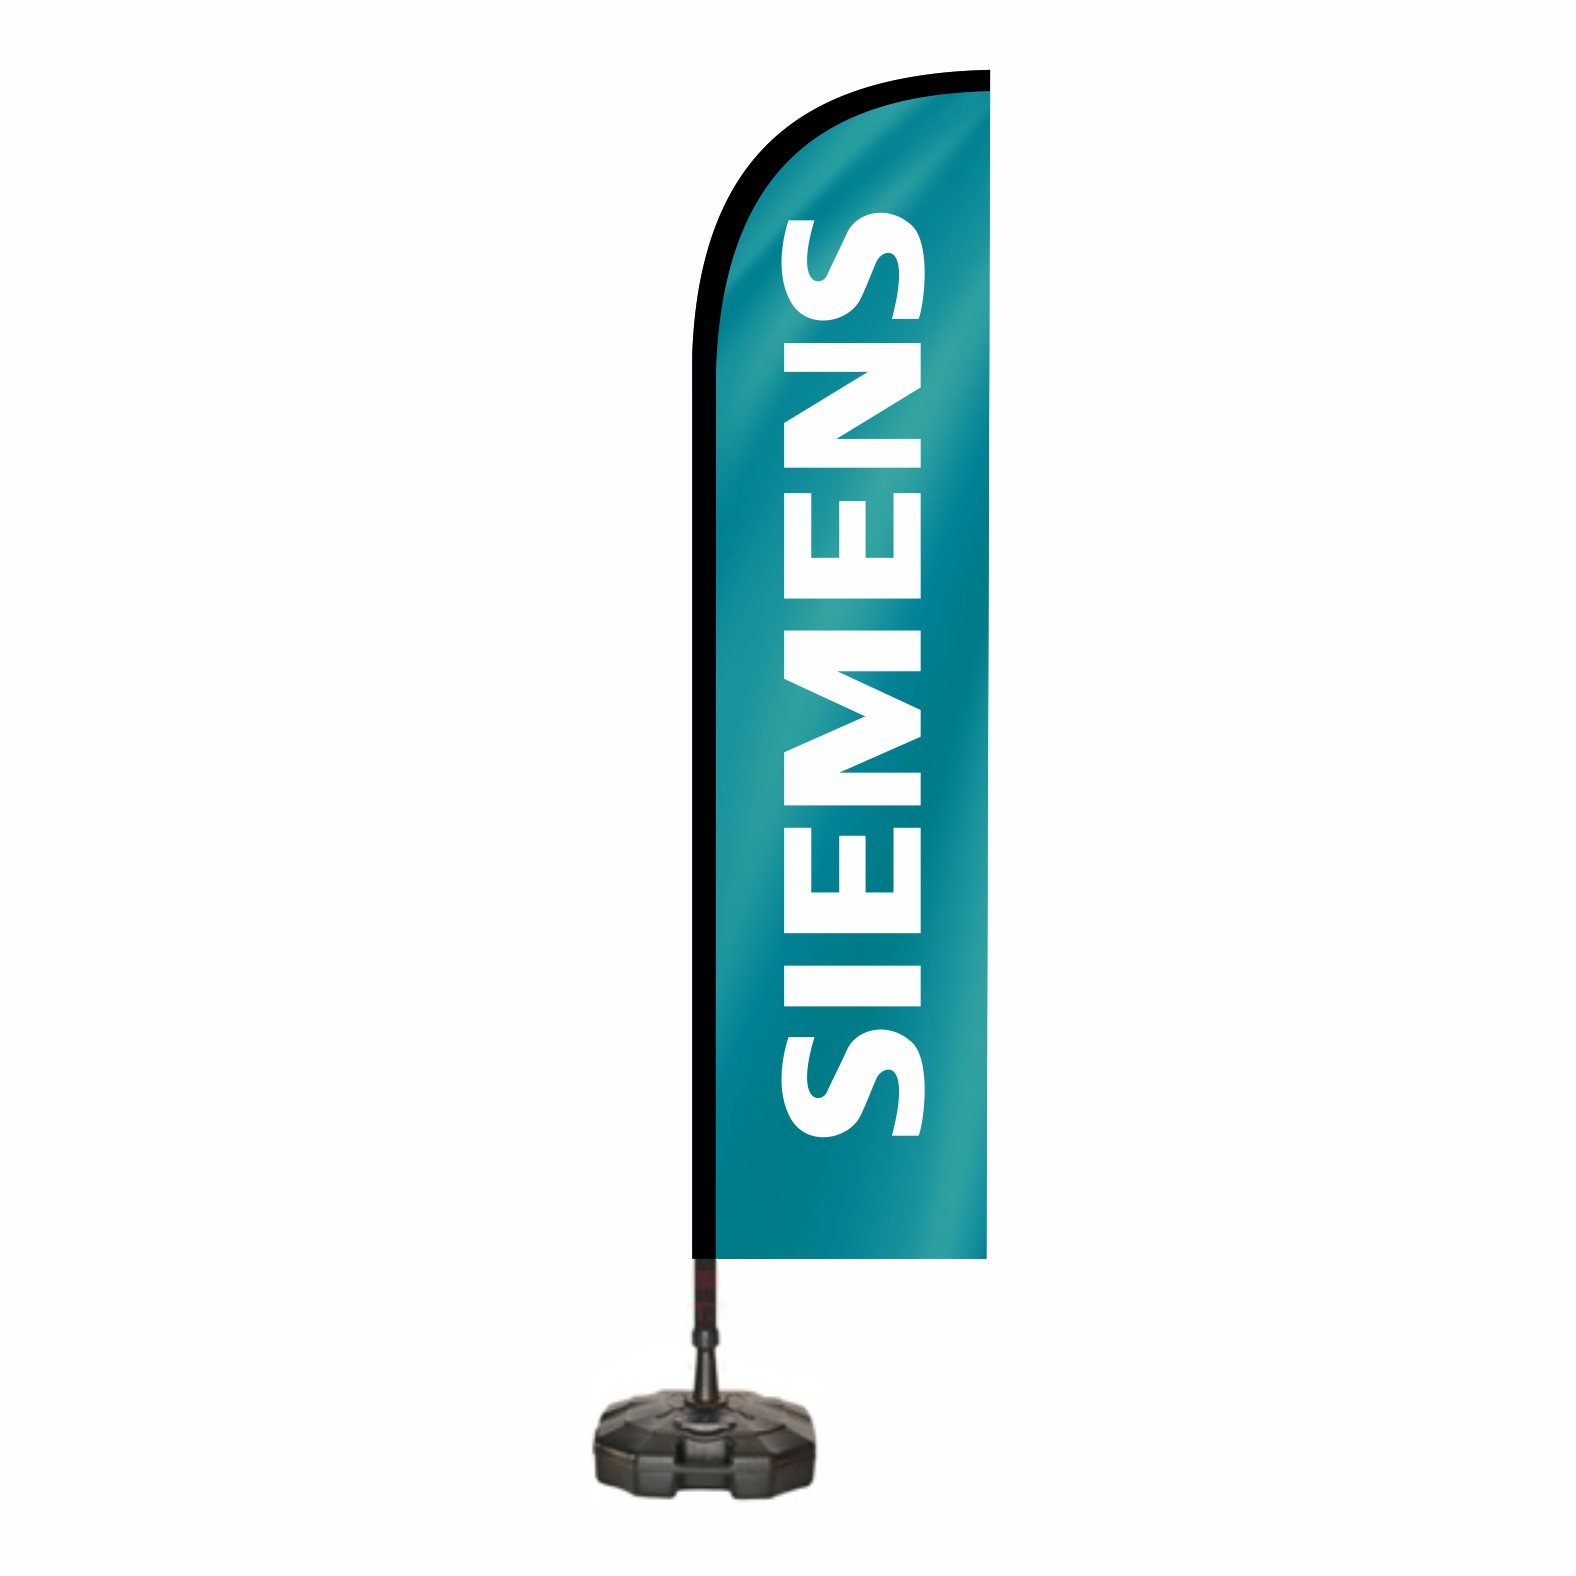 Siemens Yelken Bayraklar Nedir